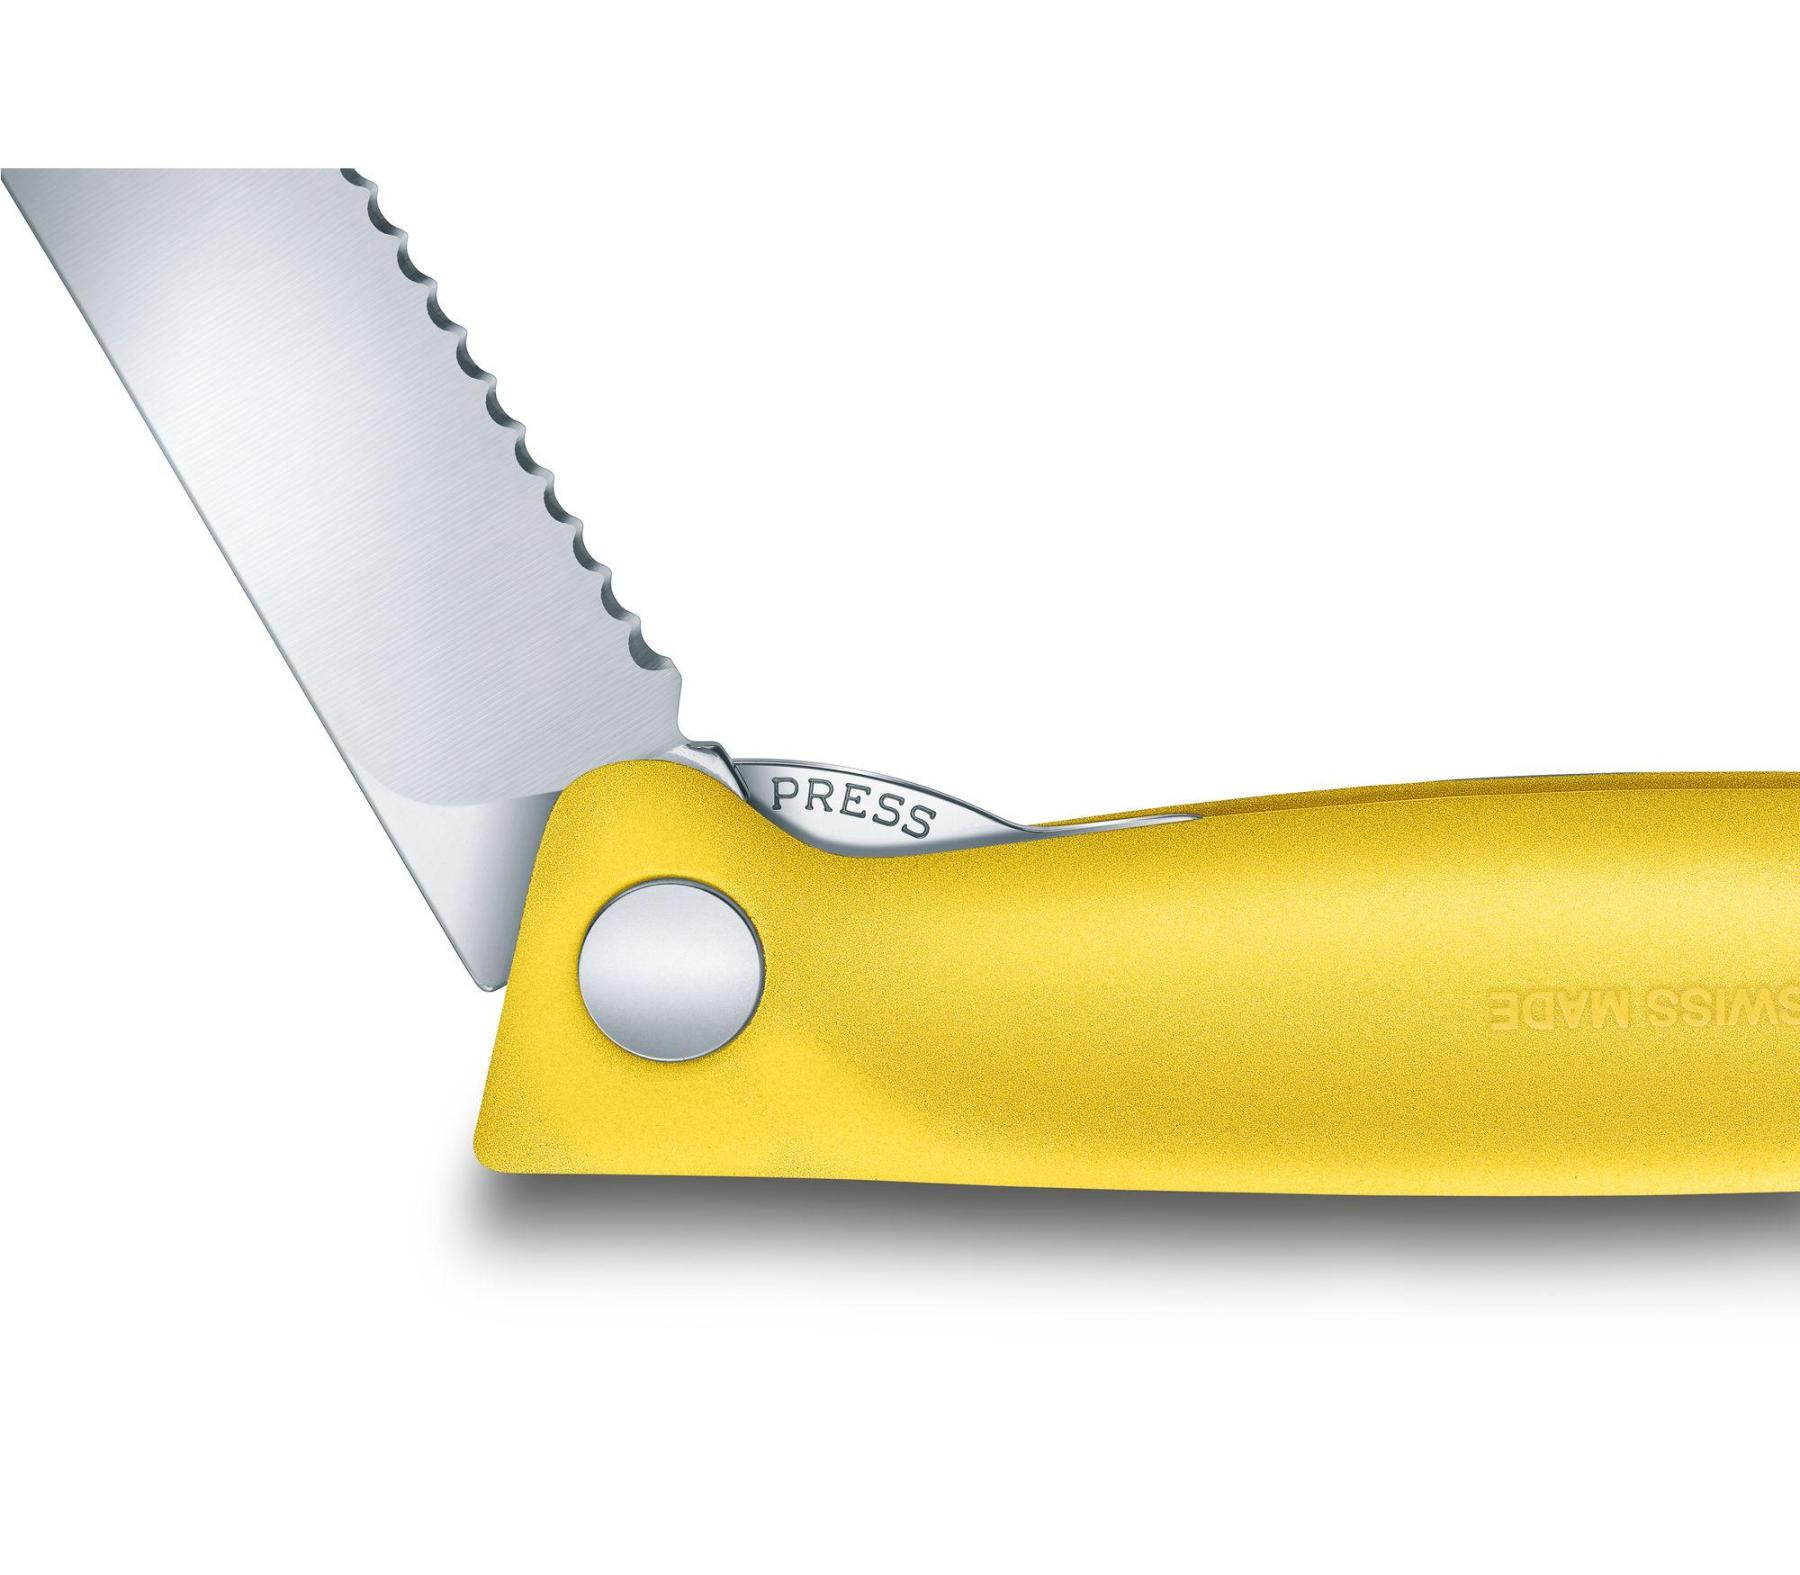 סכין ירקות מתקפלת - Victorinox